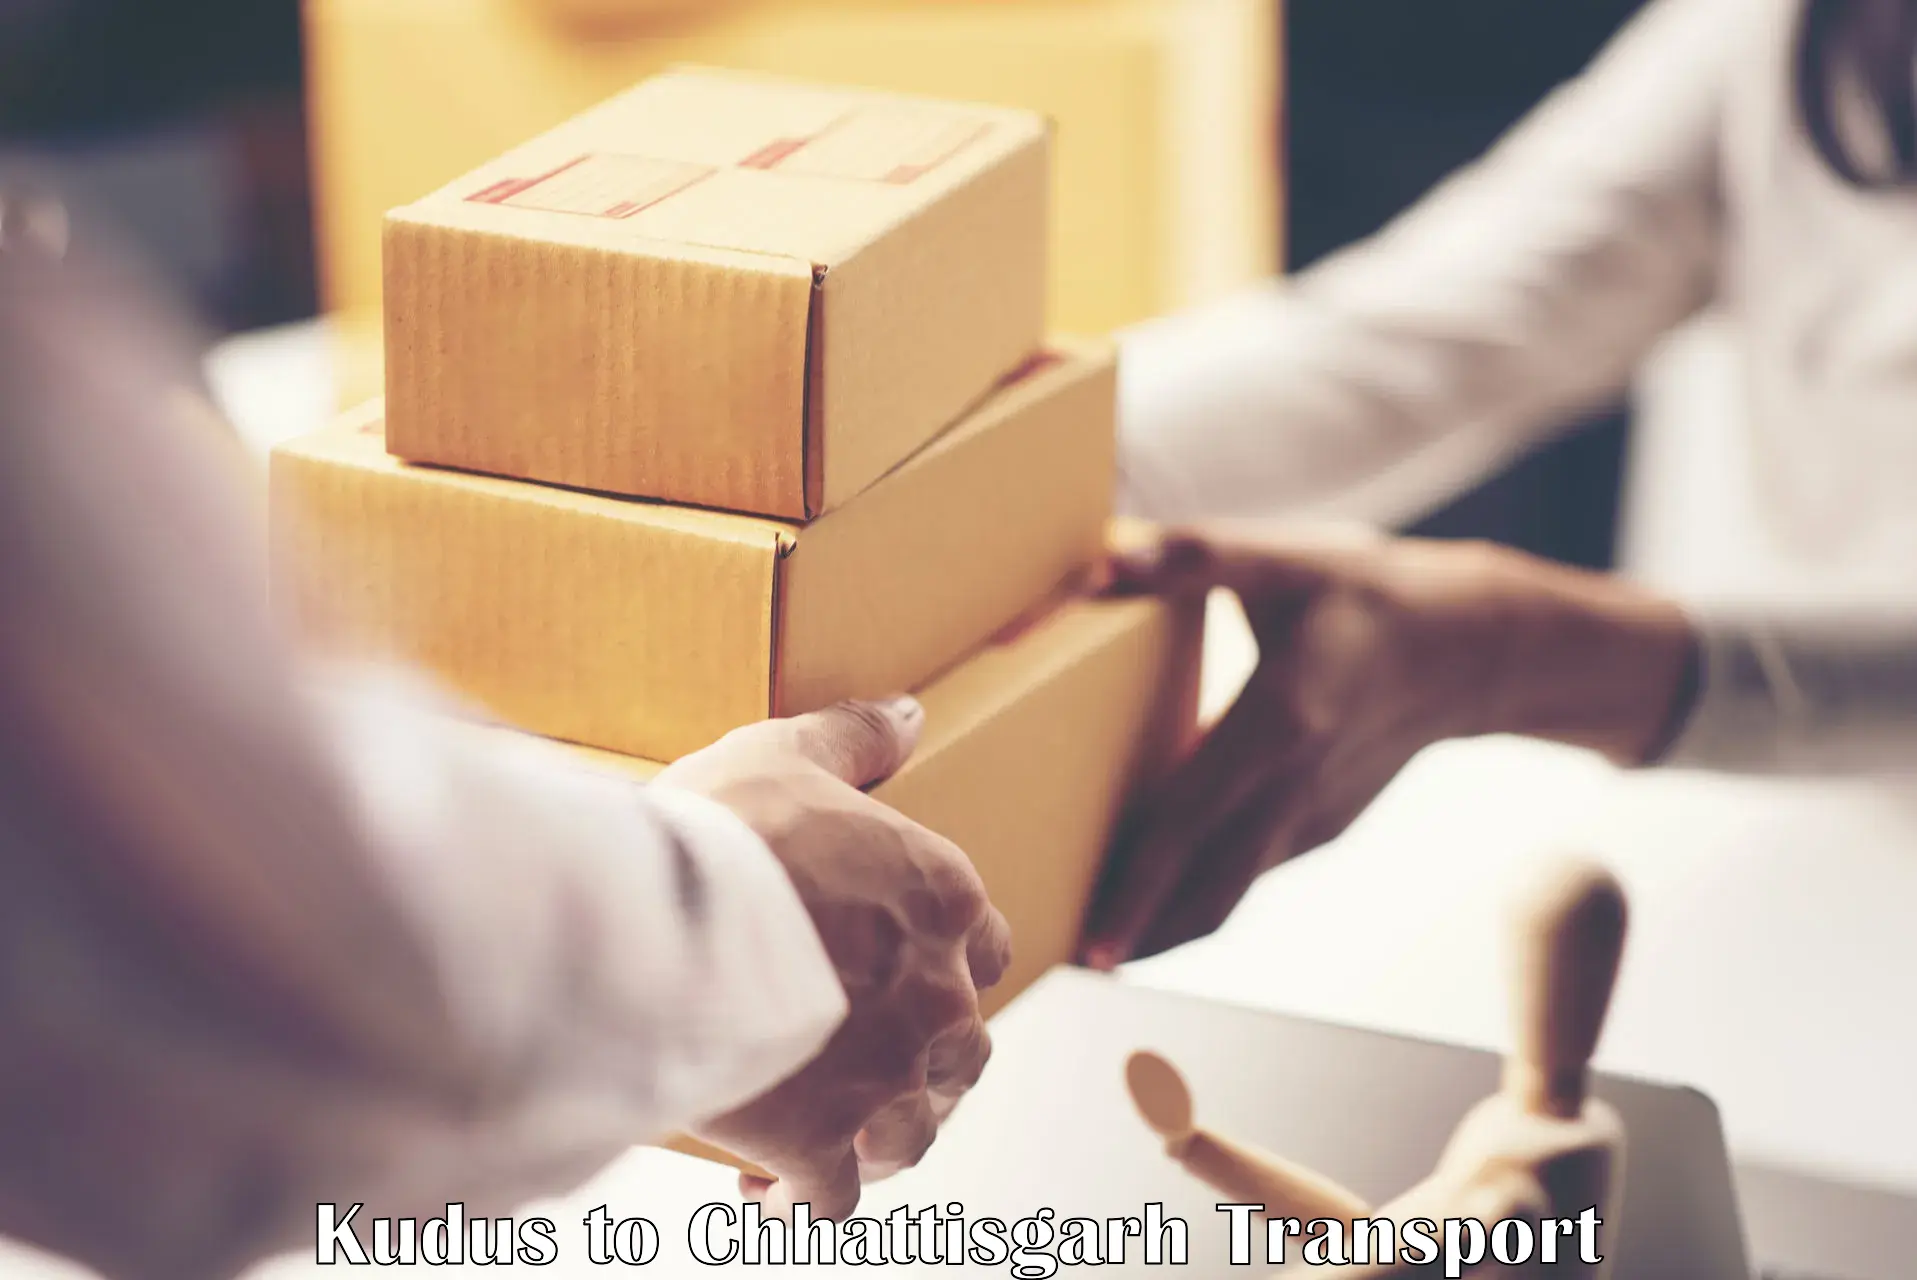 Online transport booking Kudus to Raipur